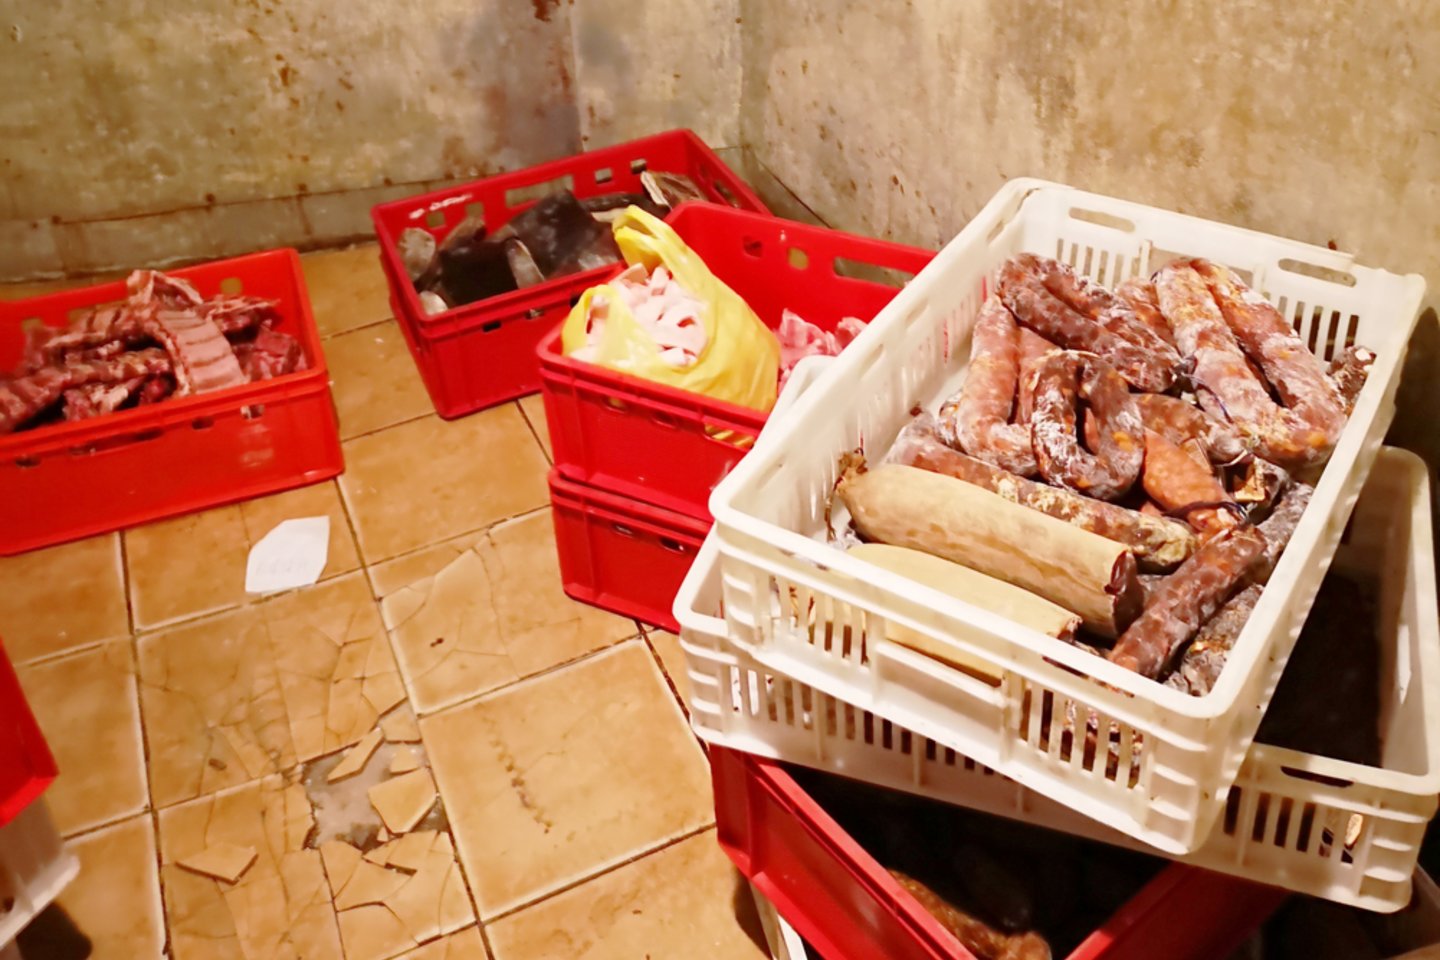 Neteisėta mėsos gaminių gamybos veikla buvo vykdoma antisanitarinėmis sąlygomis.<br>Pranešimo autorių nuotr.